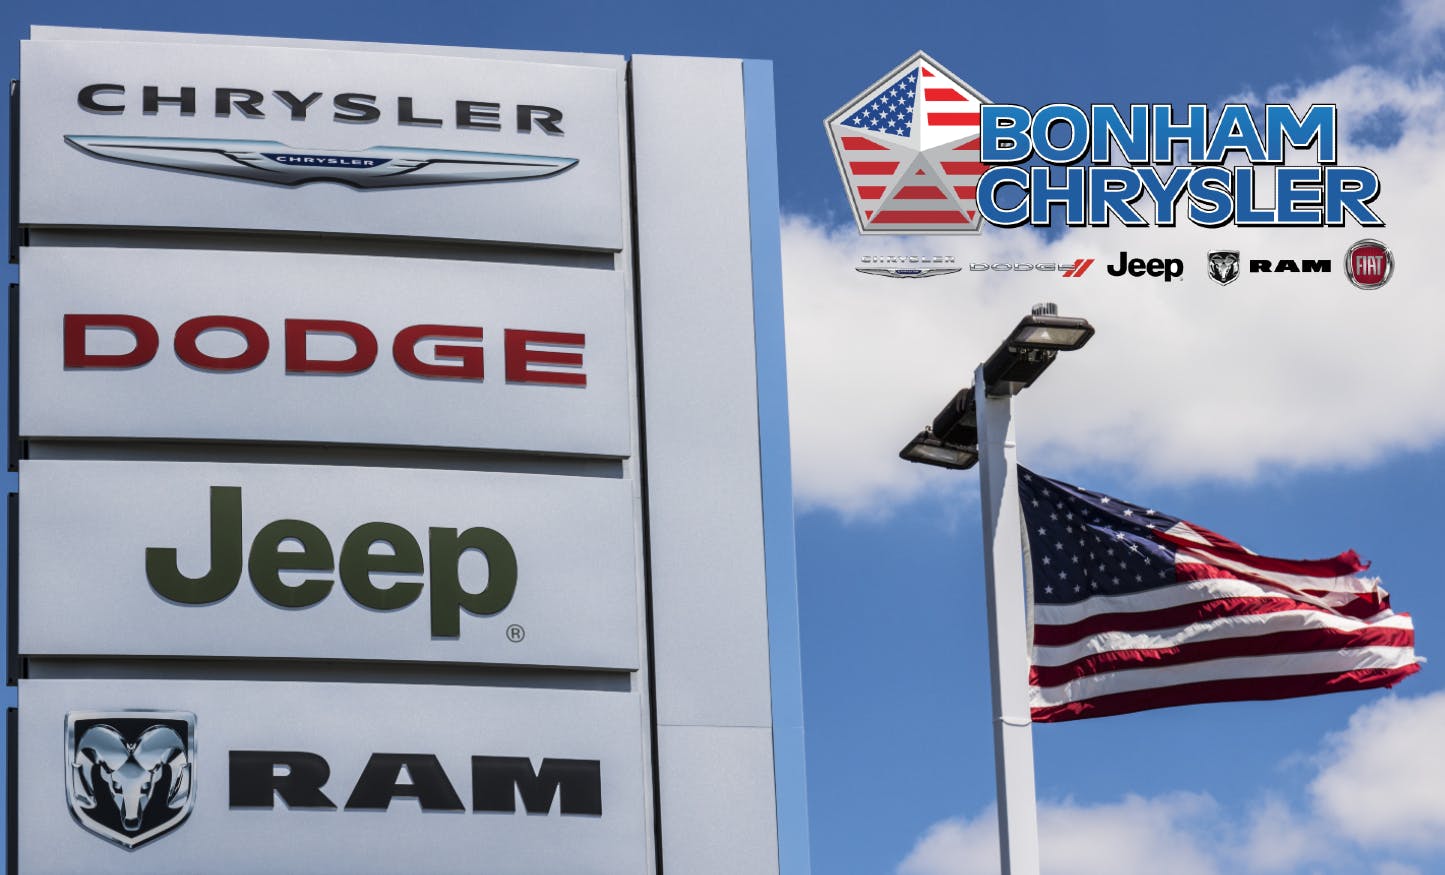 Bonham Chrysler: Dealership & Automotive Services Review